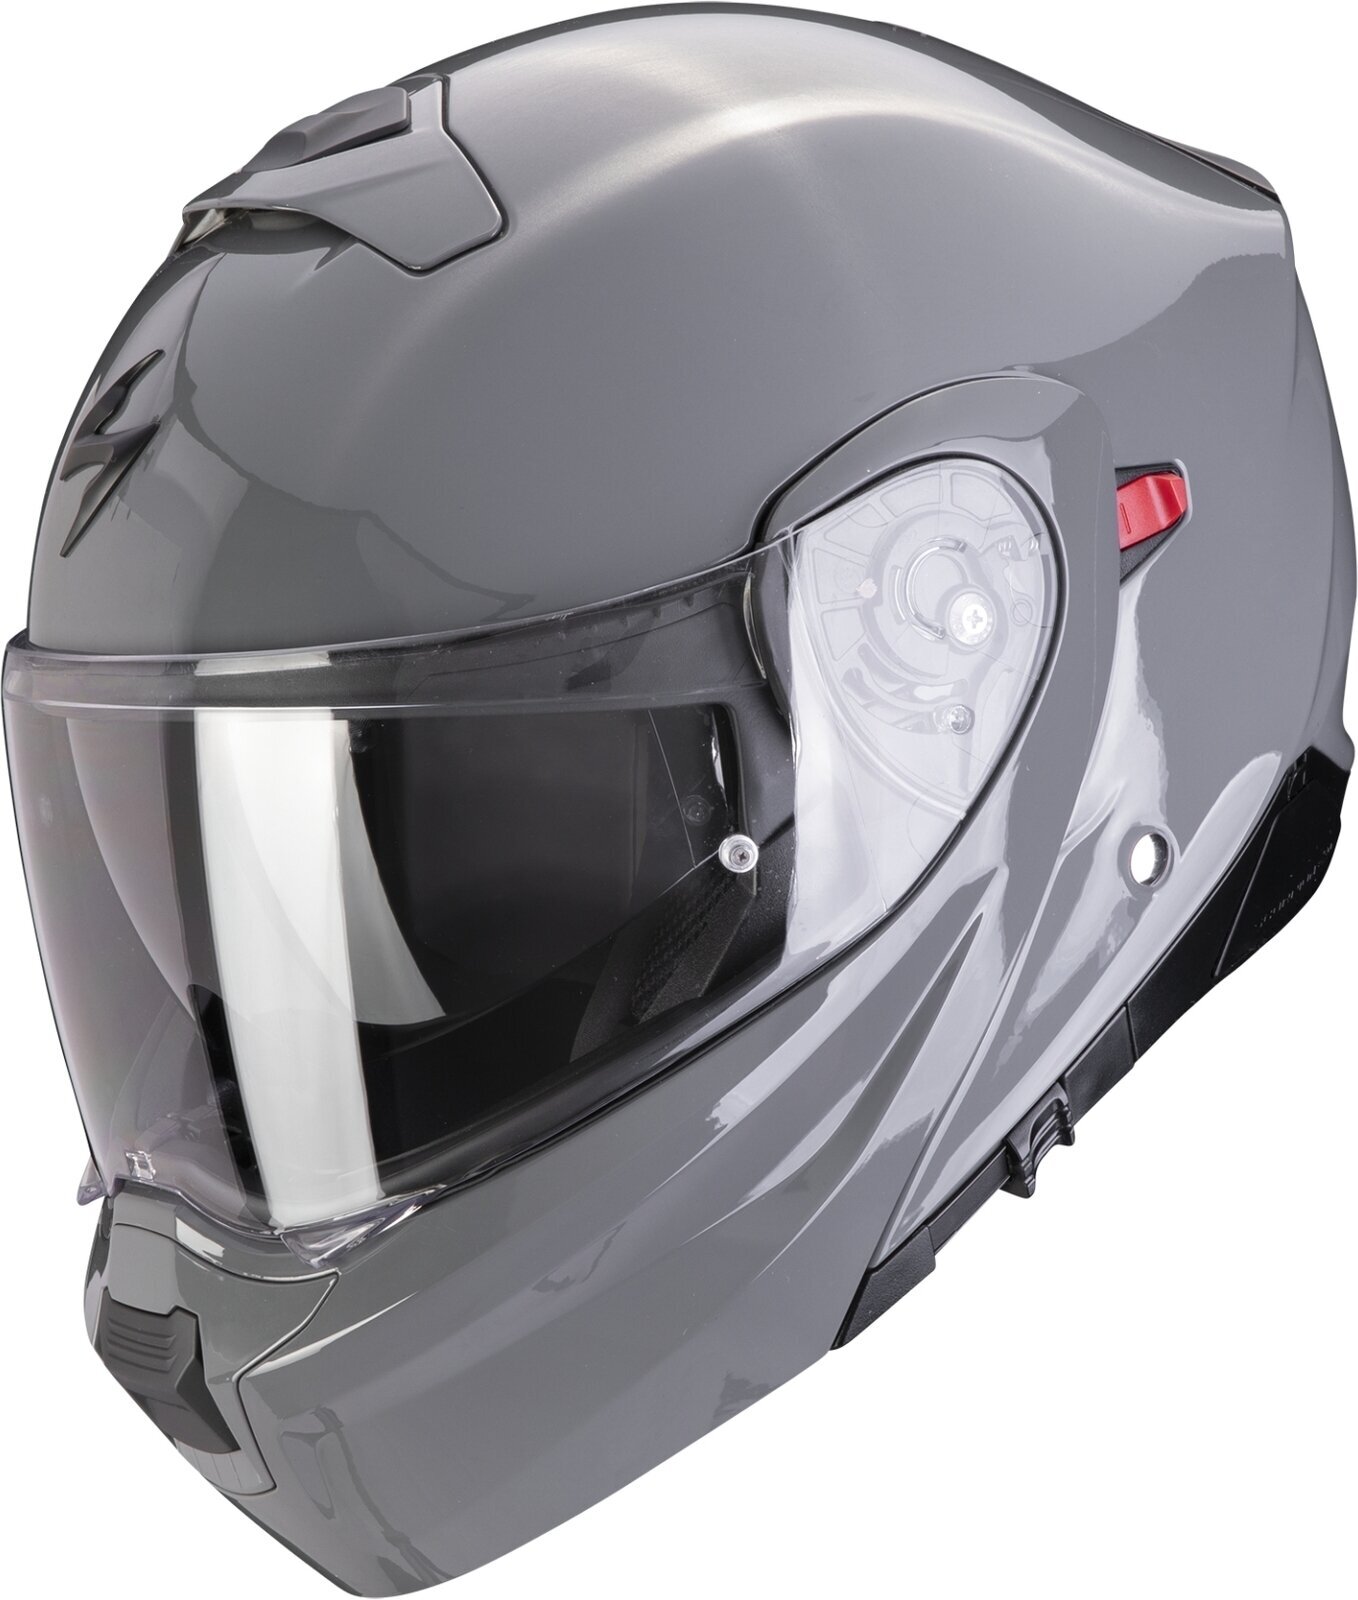 Helmet Scorpion EXO 930 EVO SOLID Cement Grey 2XL Helmet